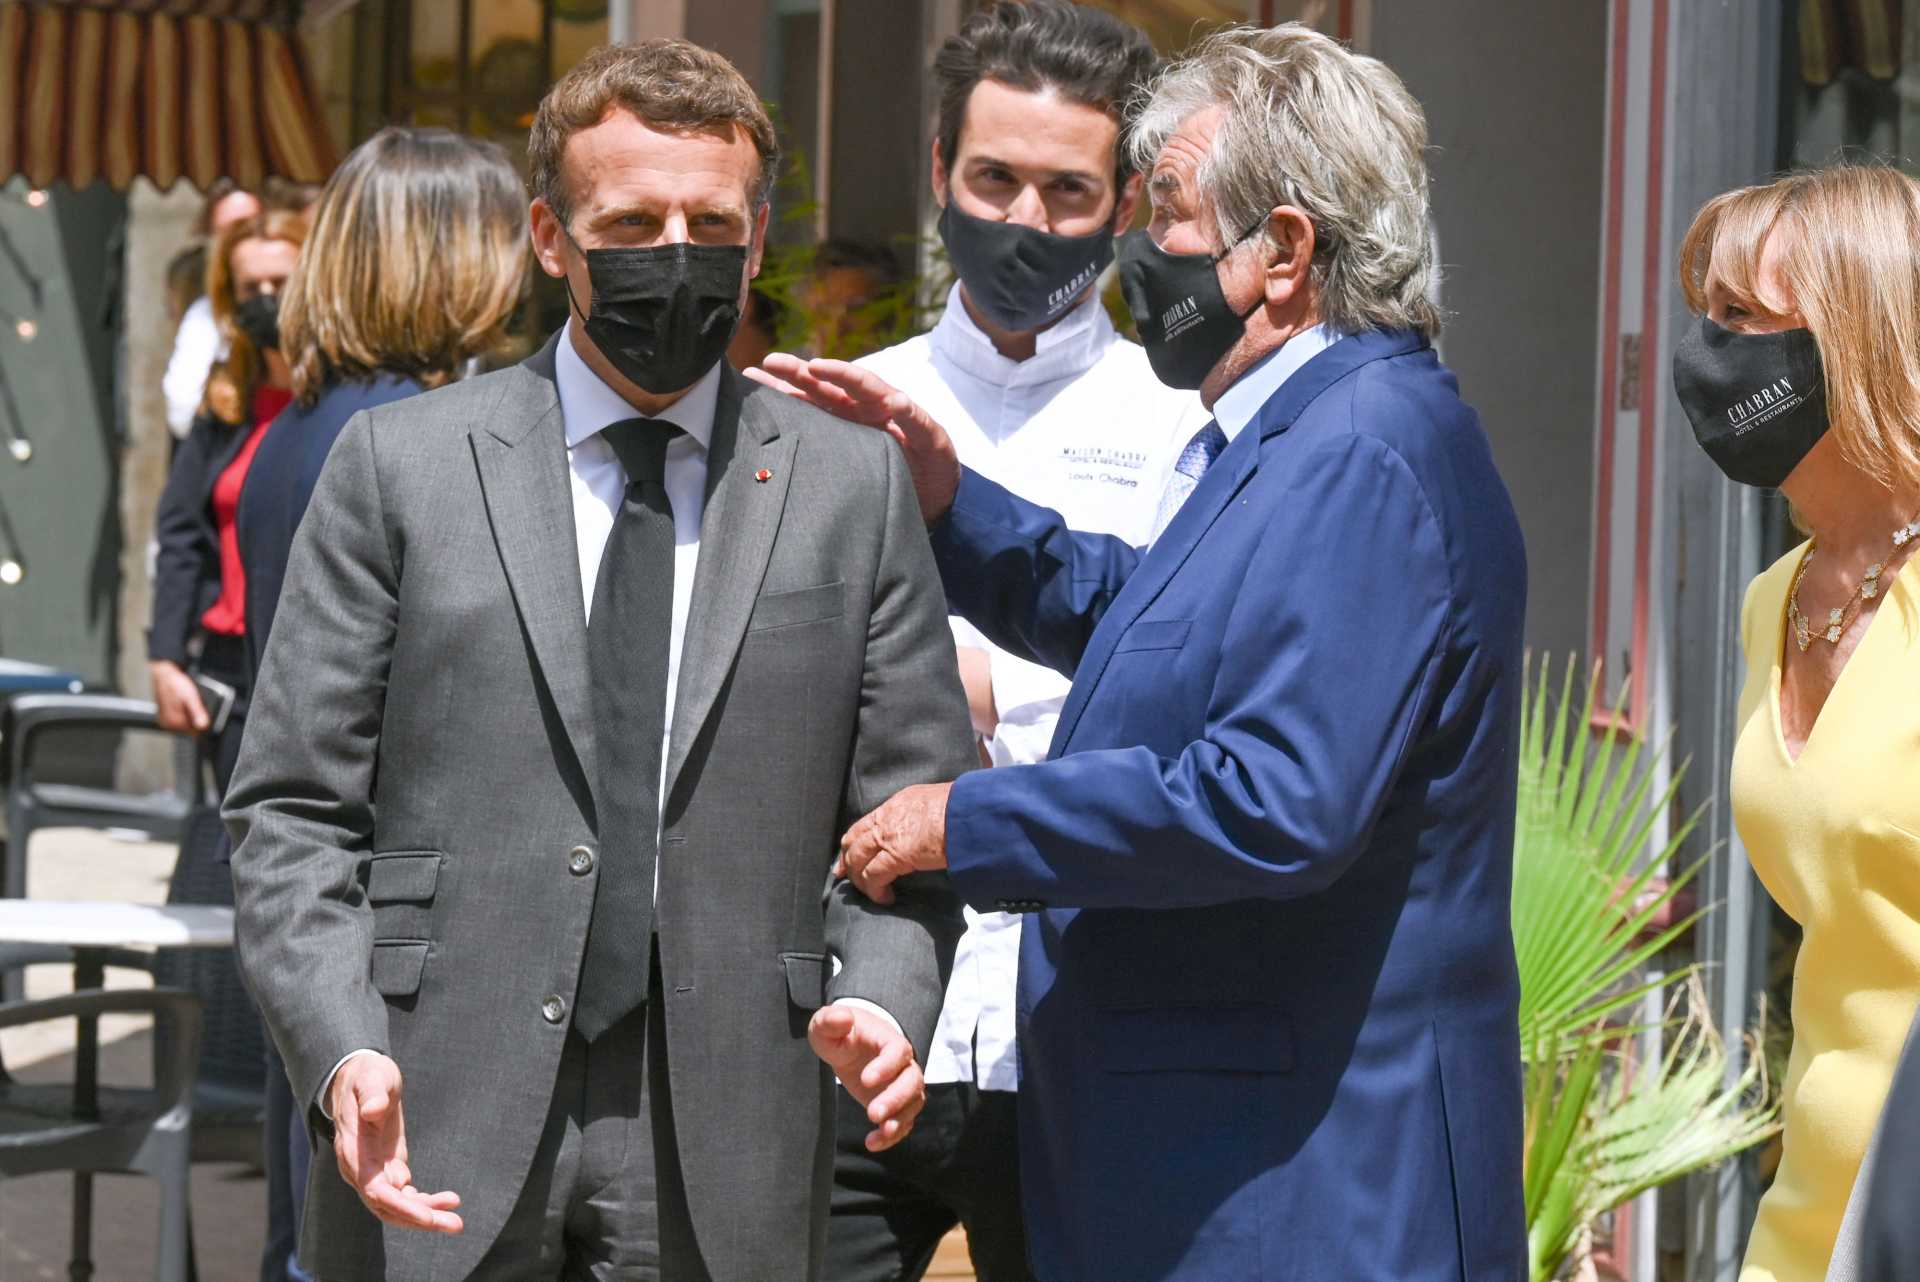 Vídeo: homem dá tapa na cara do presidente francês durante visita no país -  AFP / POOL / PHILIPPE DESMAZES